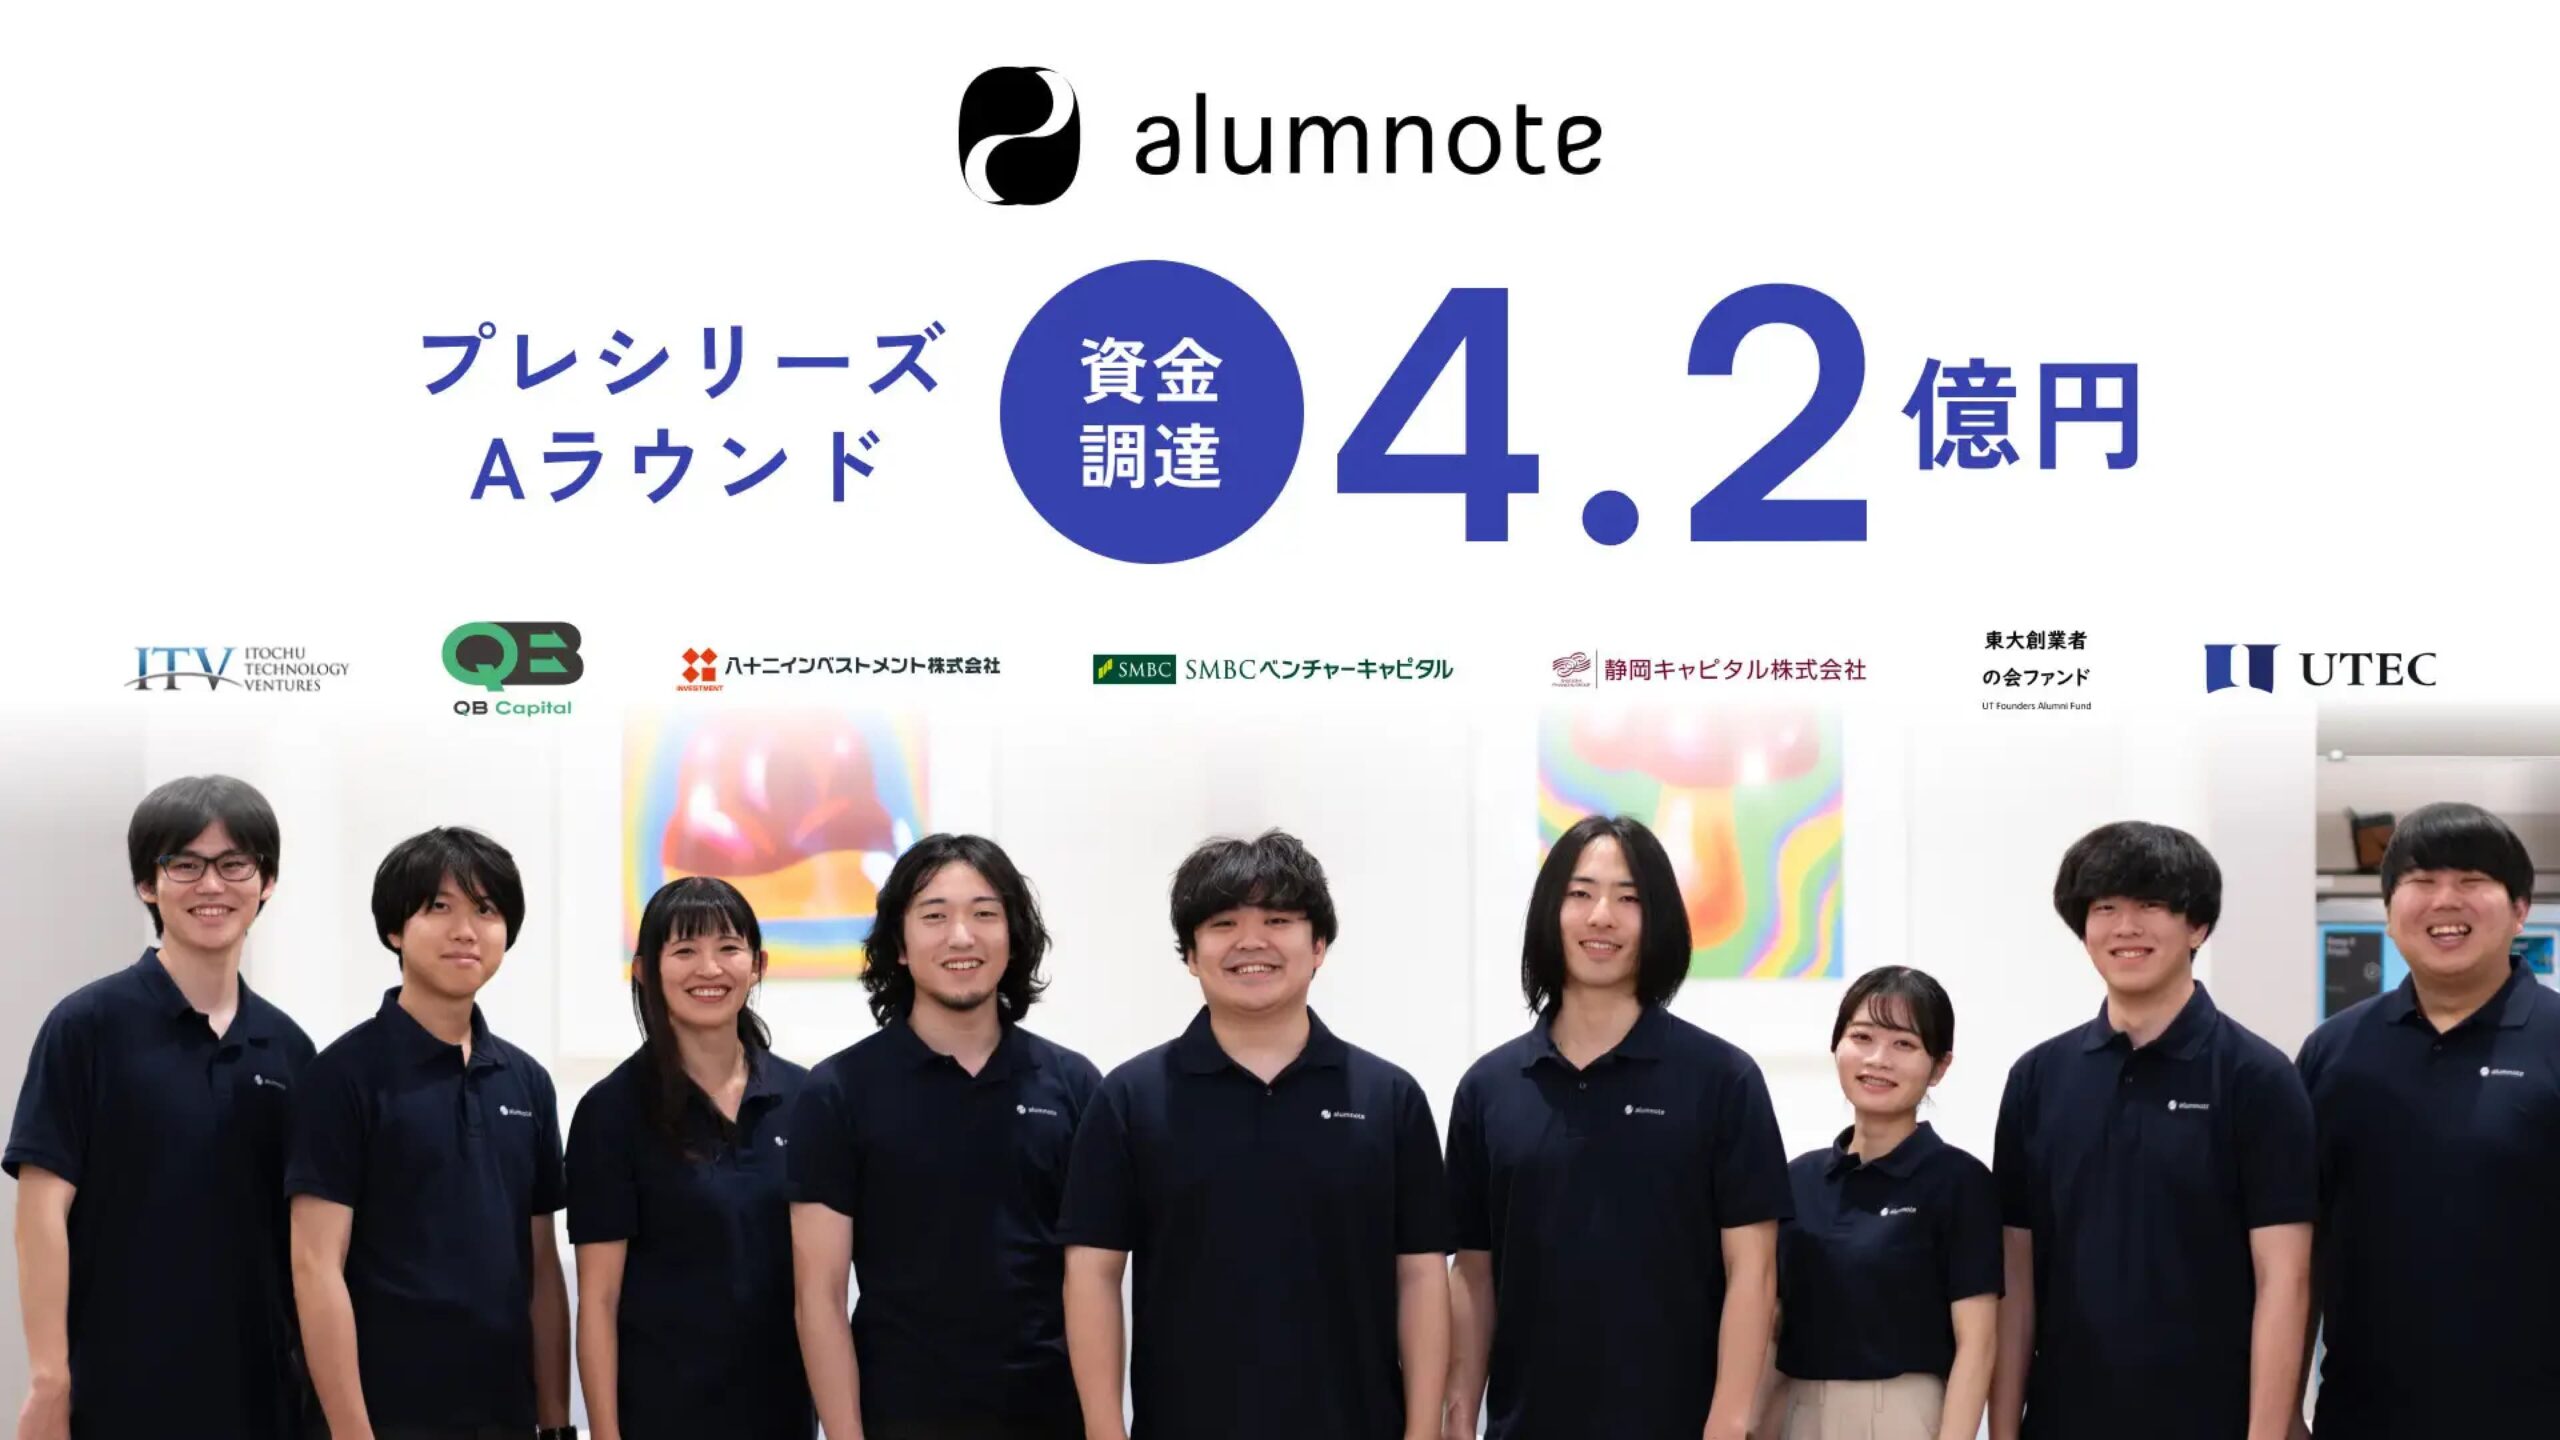 株式会社Alumnote、プレシリーズAラウンドにて4.2億円の資金調達を実施